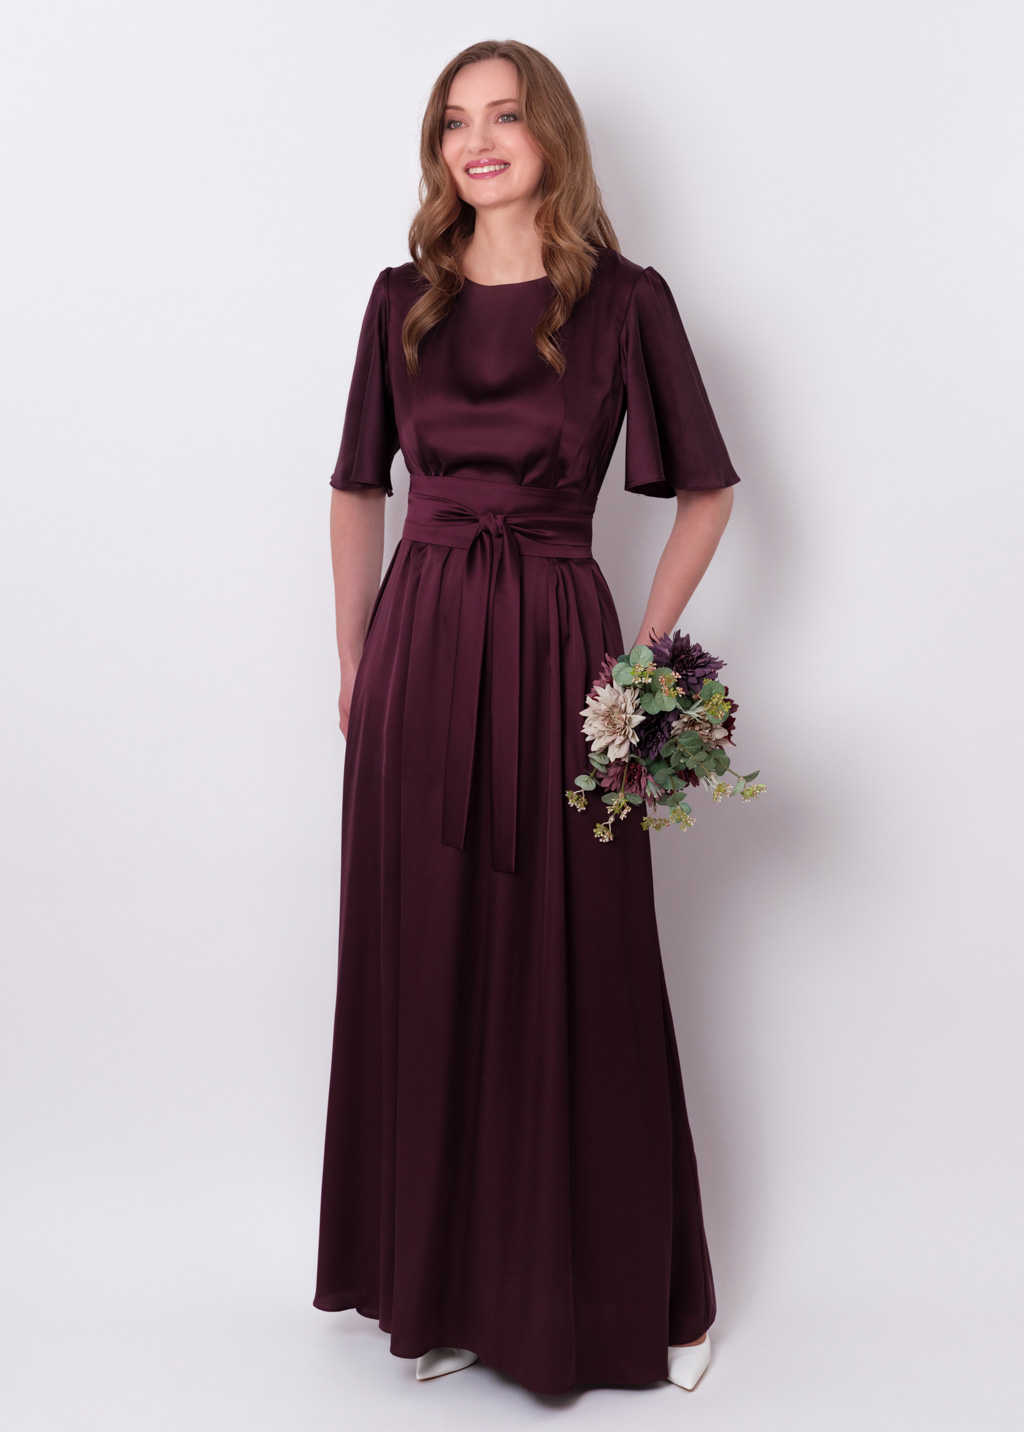 Dark burgundy silk dress with belt